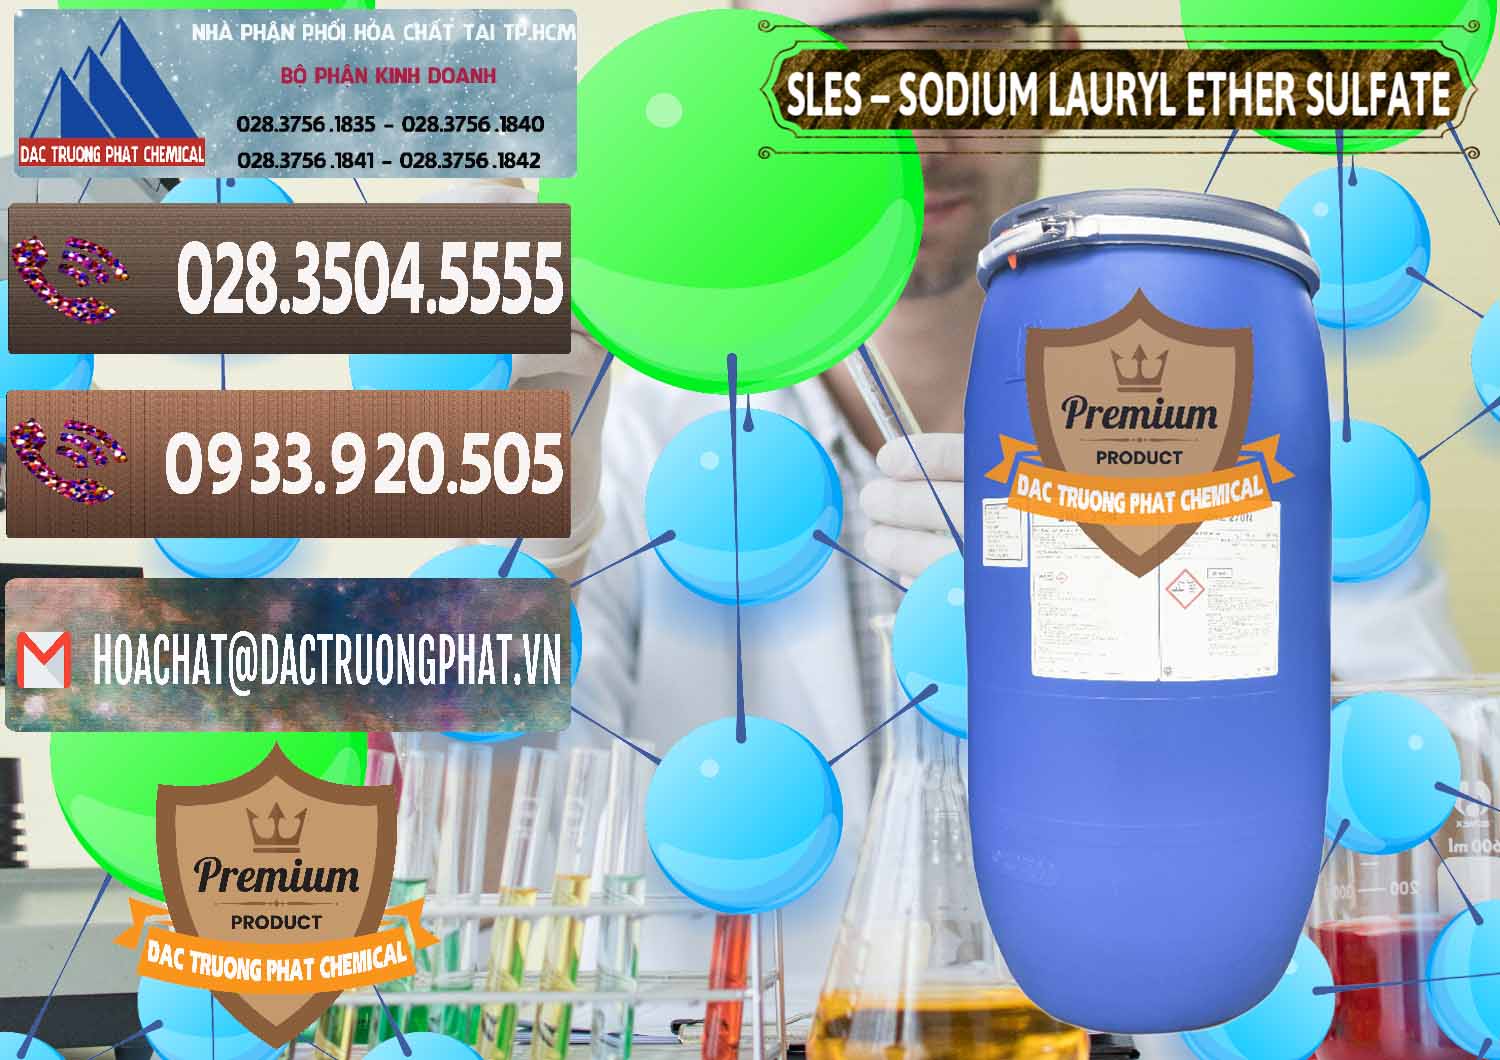 Nơi bán ( cung cấp ) Chất Tạo Bọt Sles - Sodium Lauryl Ether Sulphate Kao Indonesia - 0046 - Công ty nhập khẩu và phân phối hóa chất tại TP.HCM - hoachatviet.net